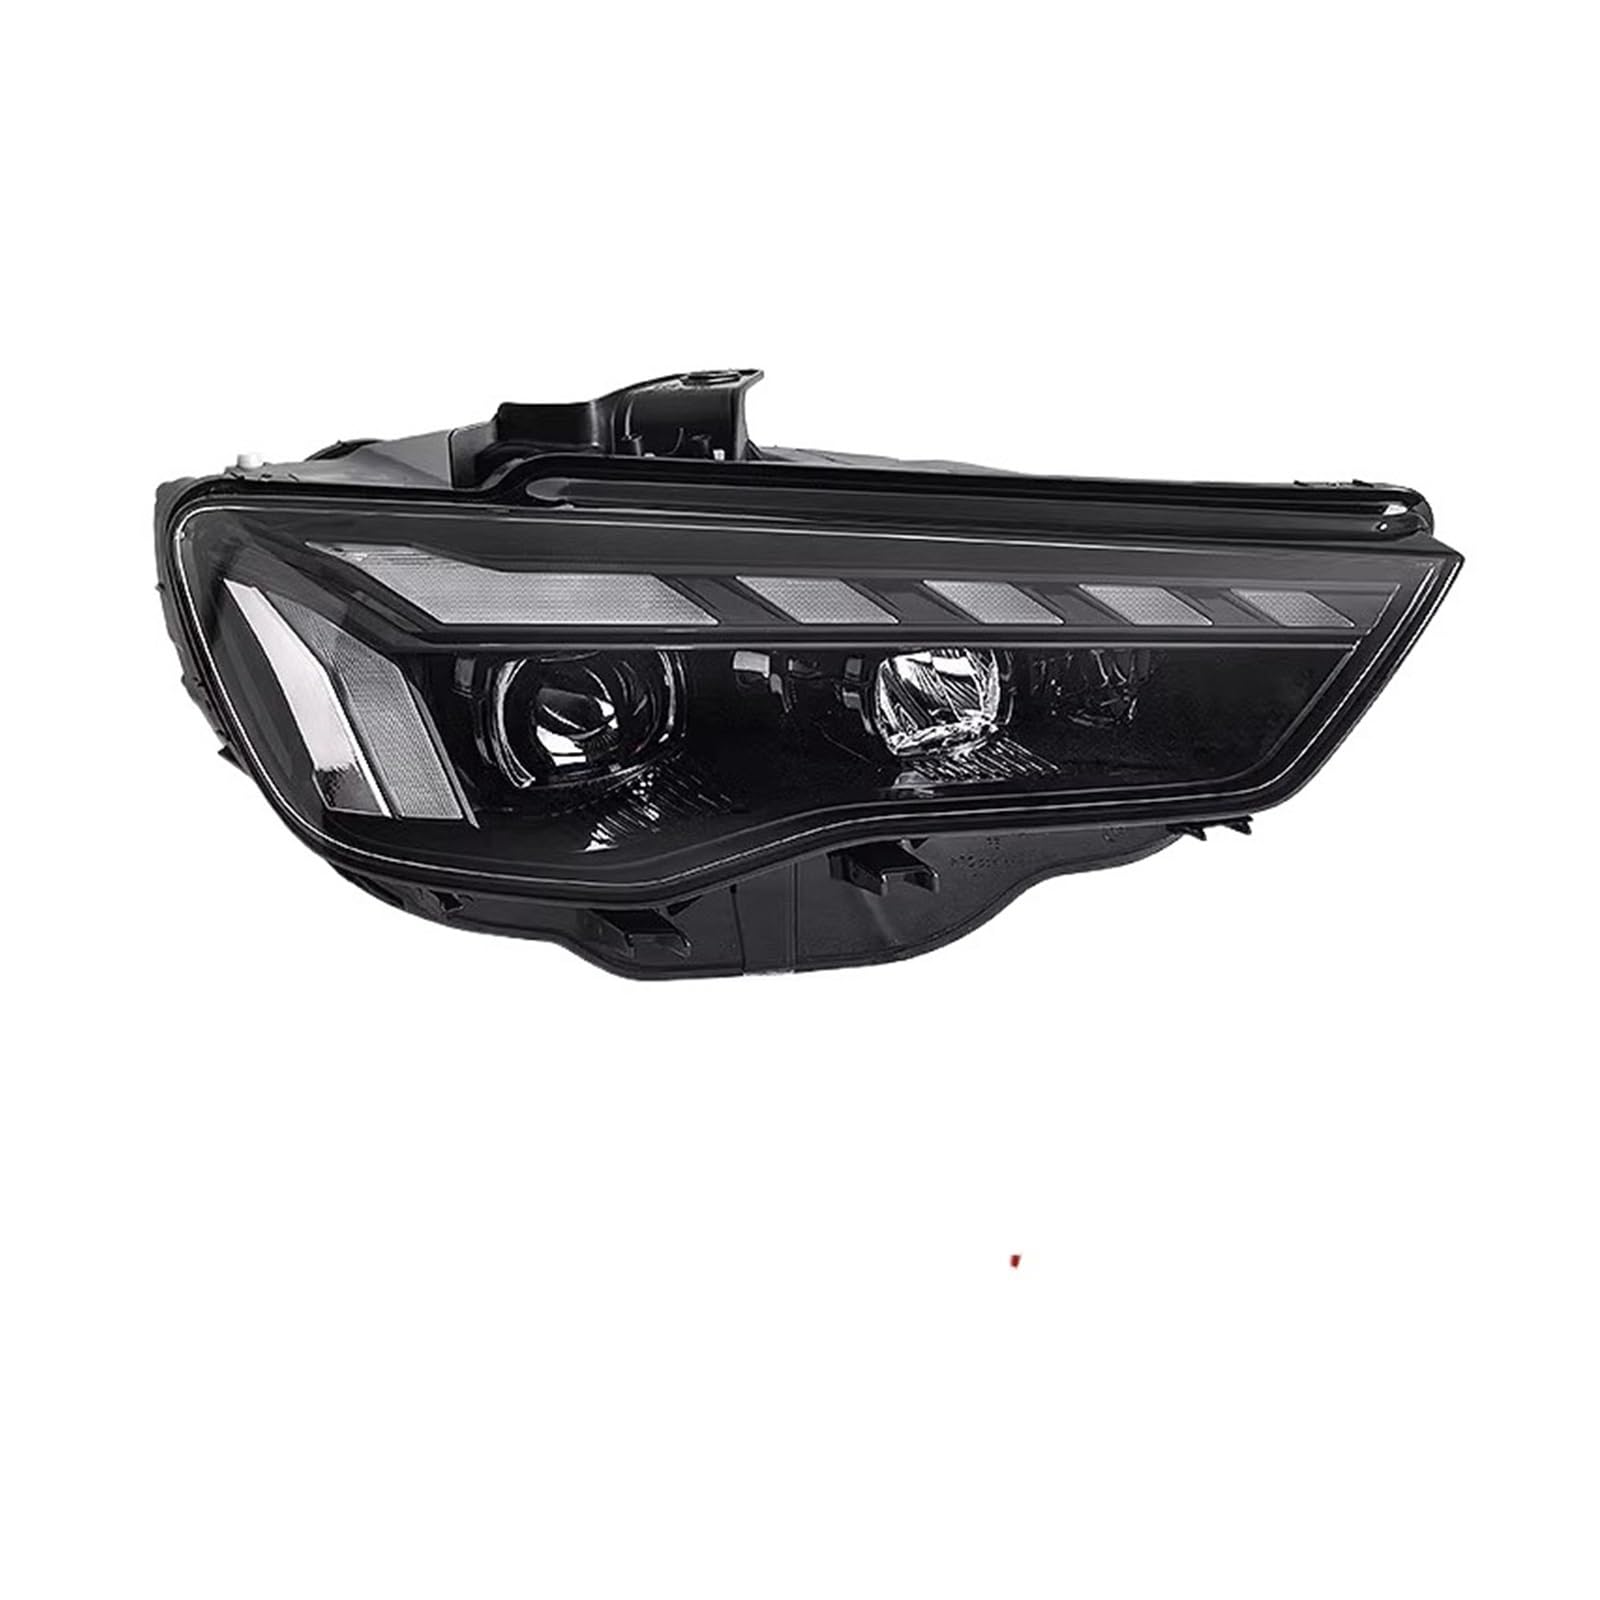 Auto Lichter Kompatibel for Audi A3 LED Scheinwerfer 2013-2020 A3 Kopf Lampe Drl Projektor Objektiv Automotive Zubehör(2013-2016) von LIINYTG